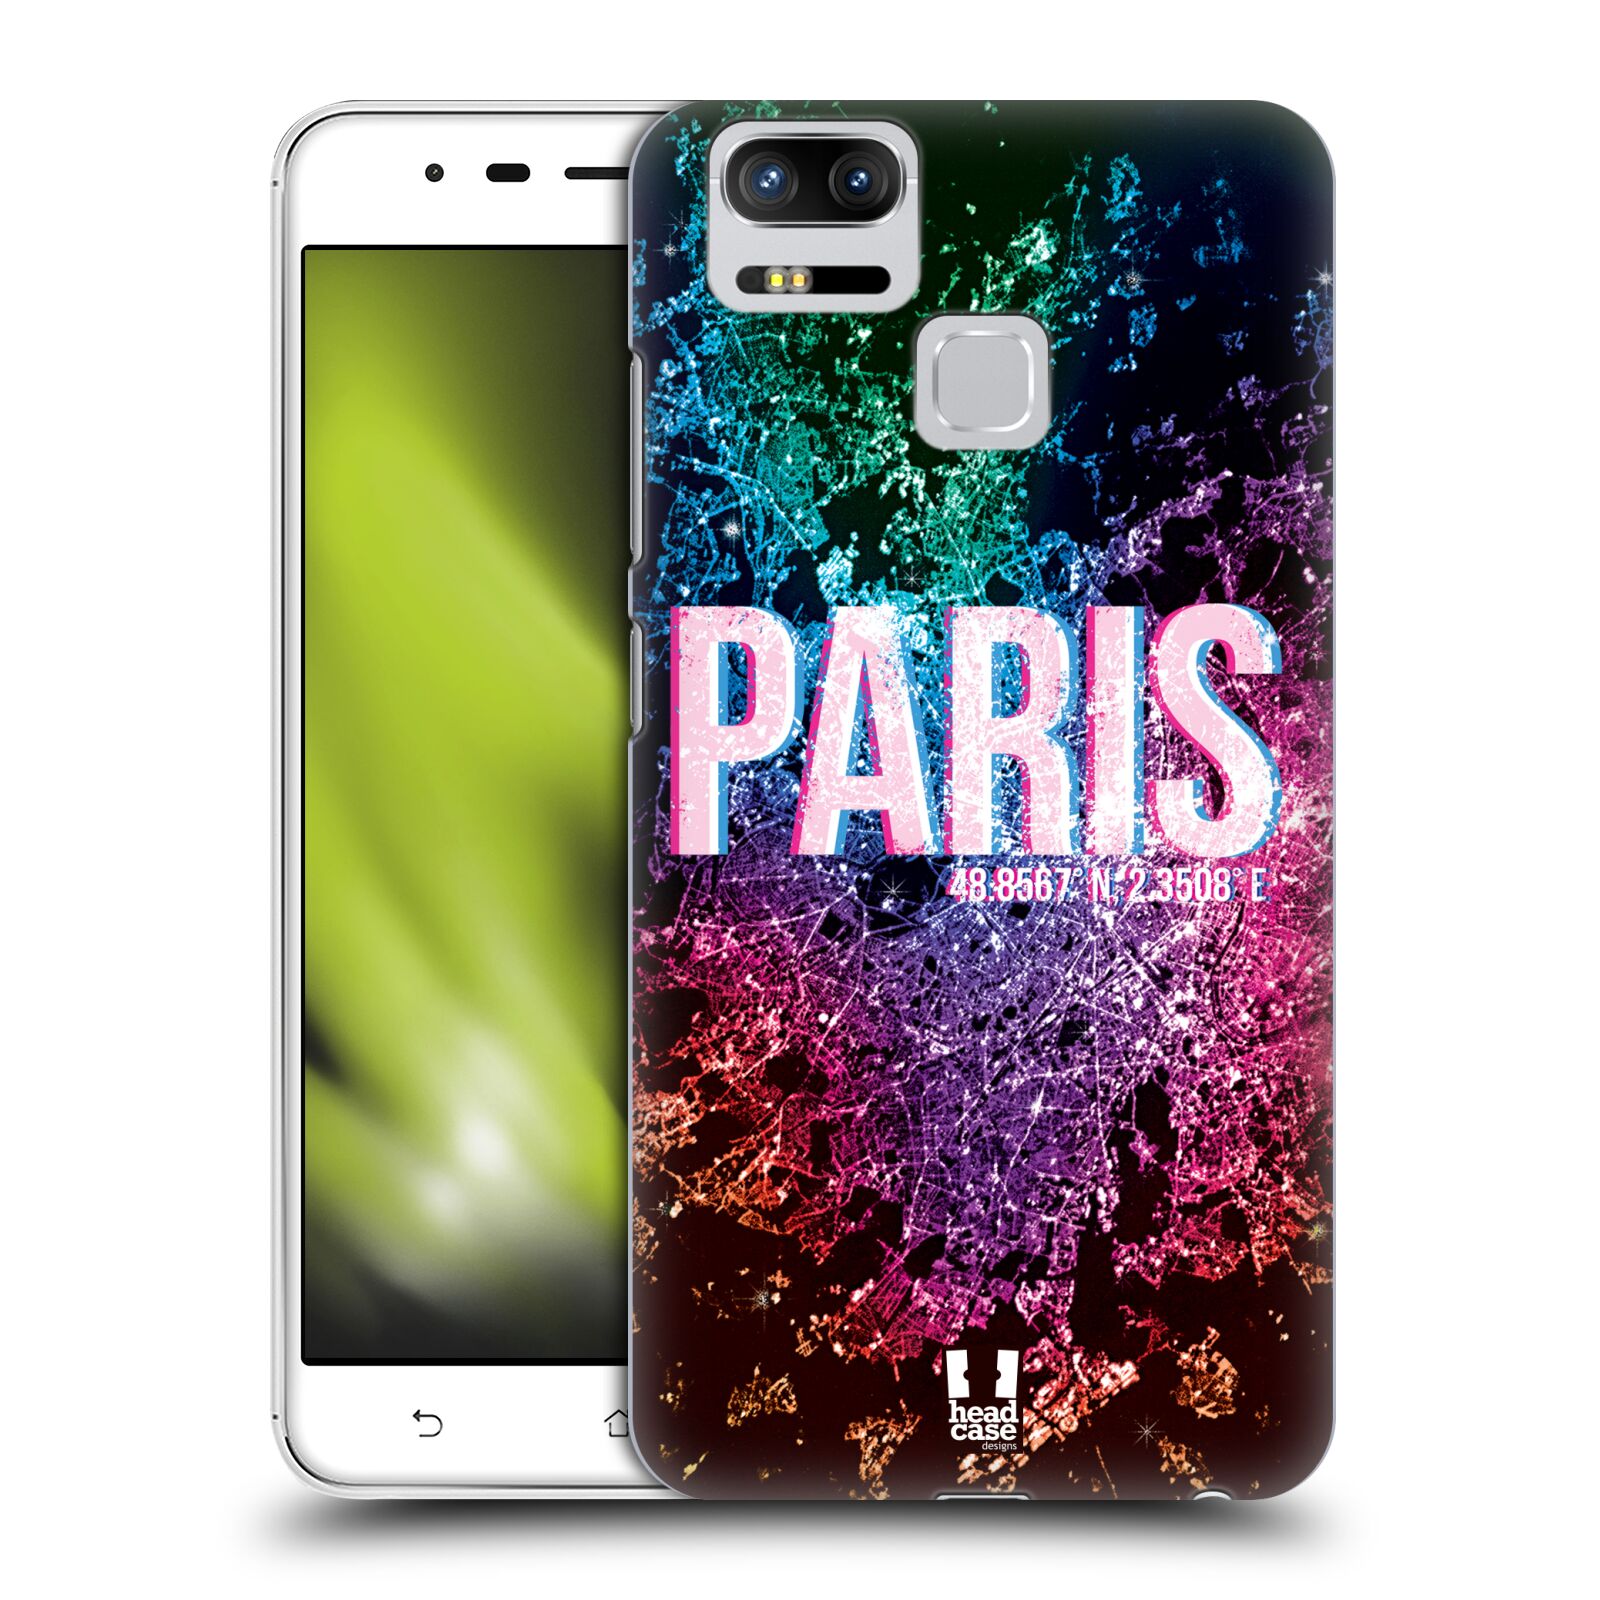 HEAD CASE plastový obal na mobil Asus Zenfone 3 Zoom ZE553KL vzor Světla známých měst, Satelitní snímky FRANCIE, PAŘÍŽ